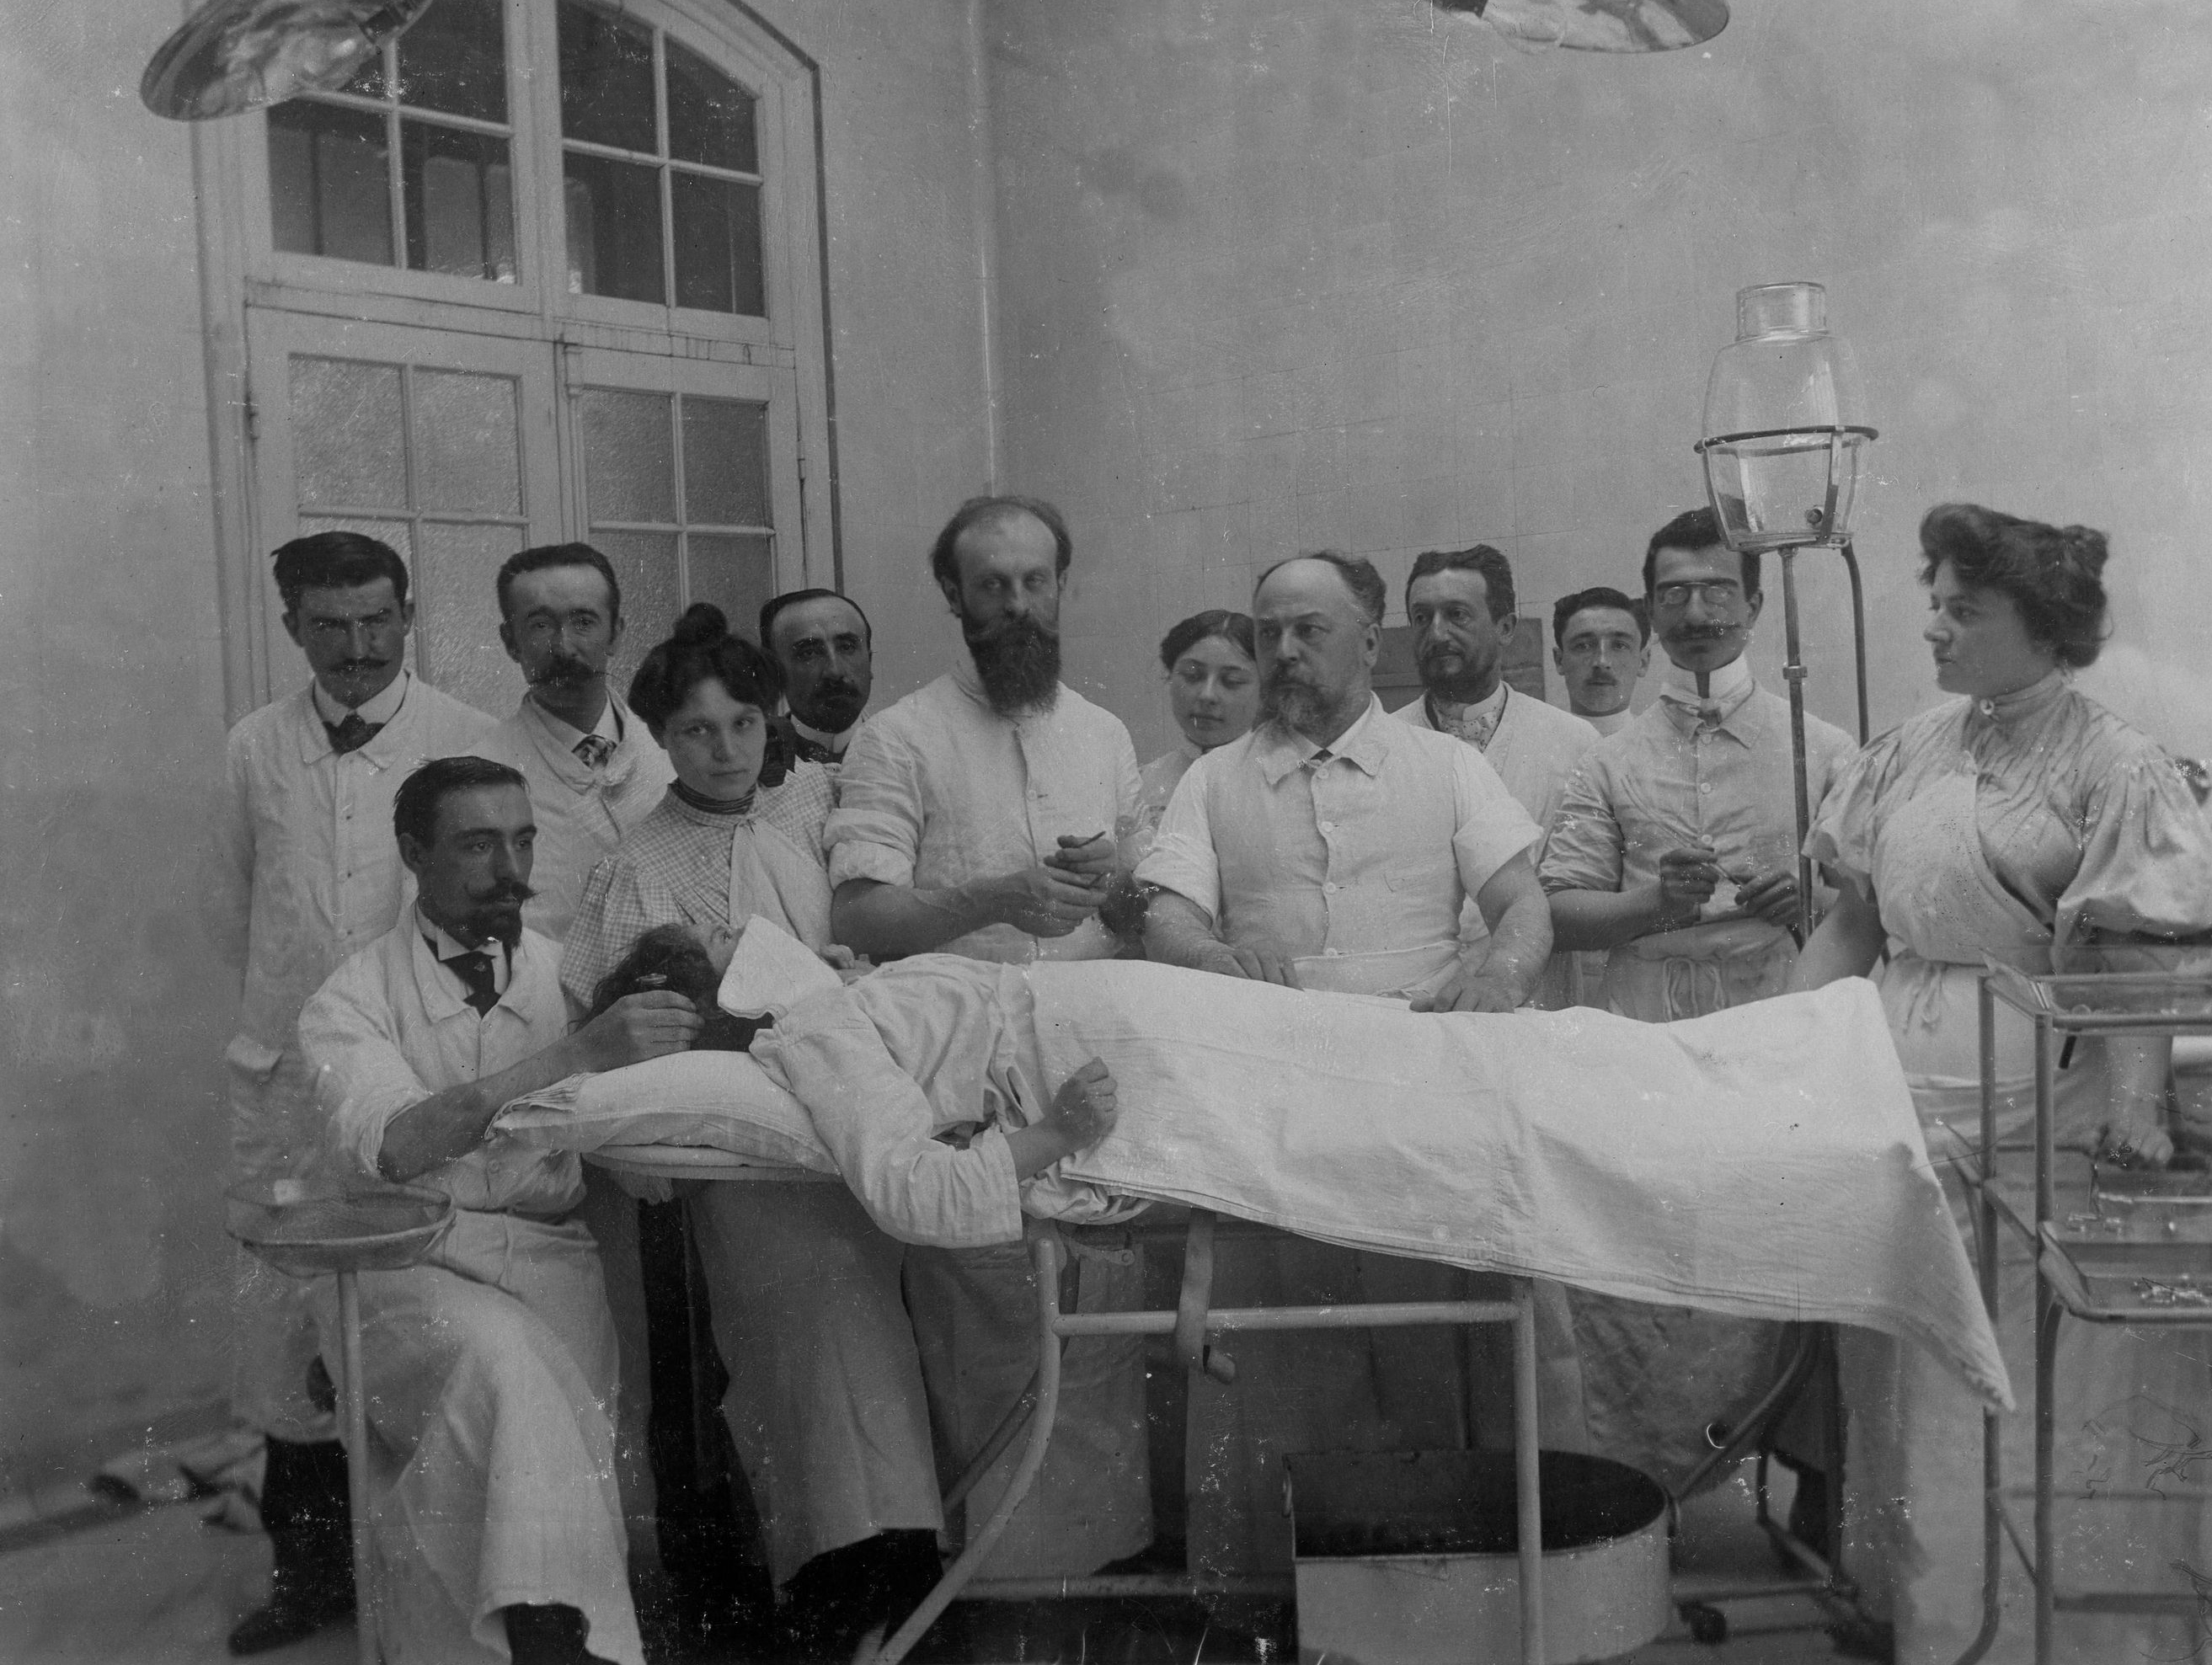 "Une opération à la maternité", vers 1900